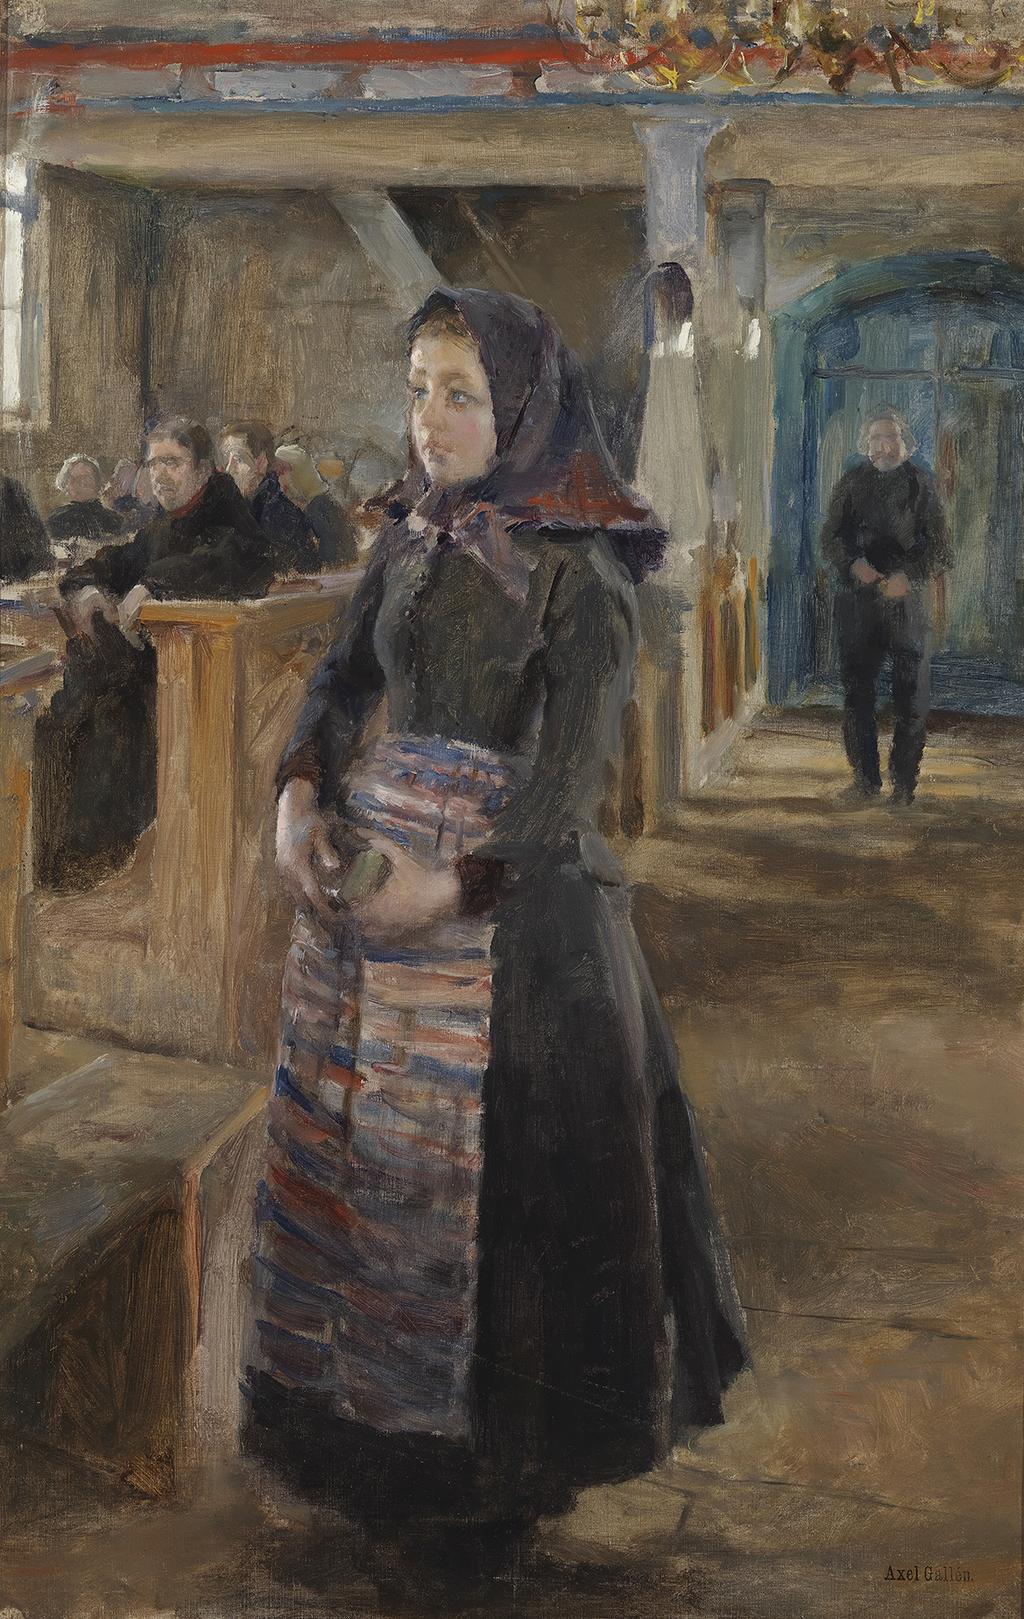 Axel Gallén maalasi vuonna 1889 kaksi kirkkotyttö-aihetta.